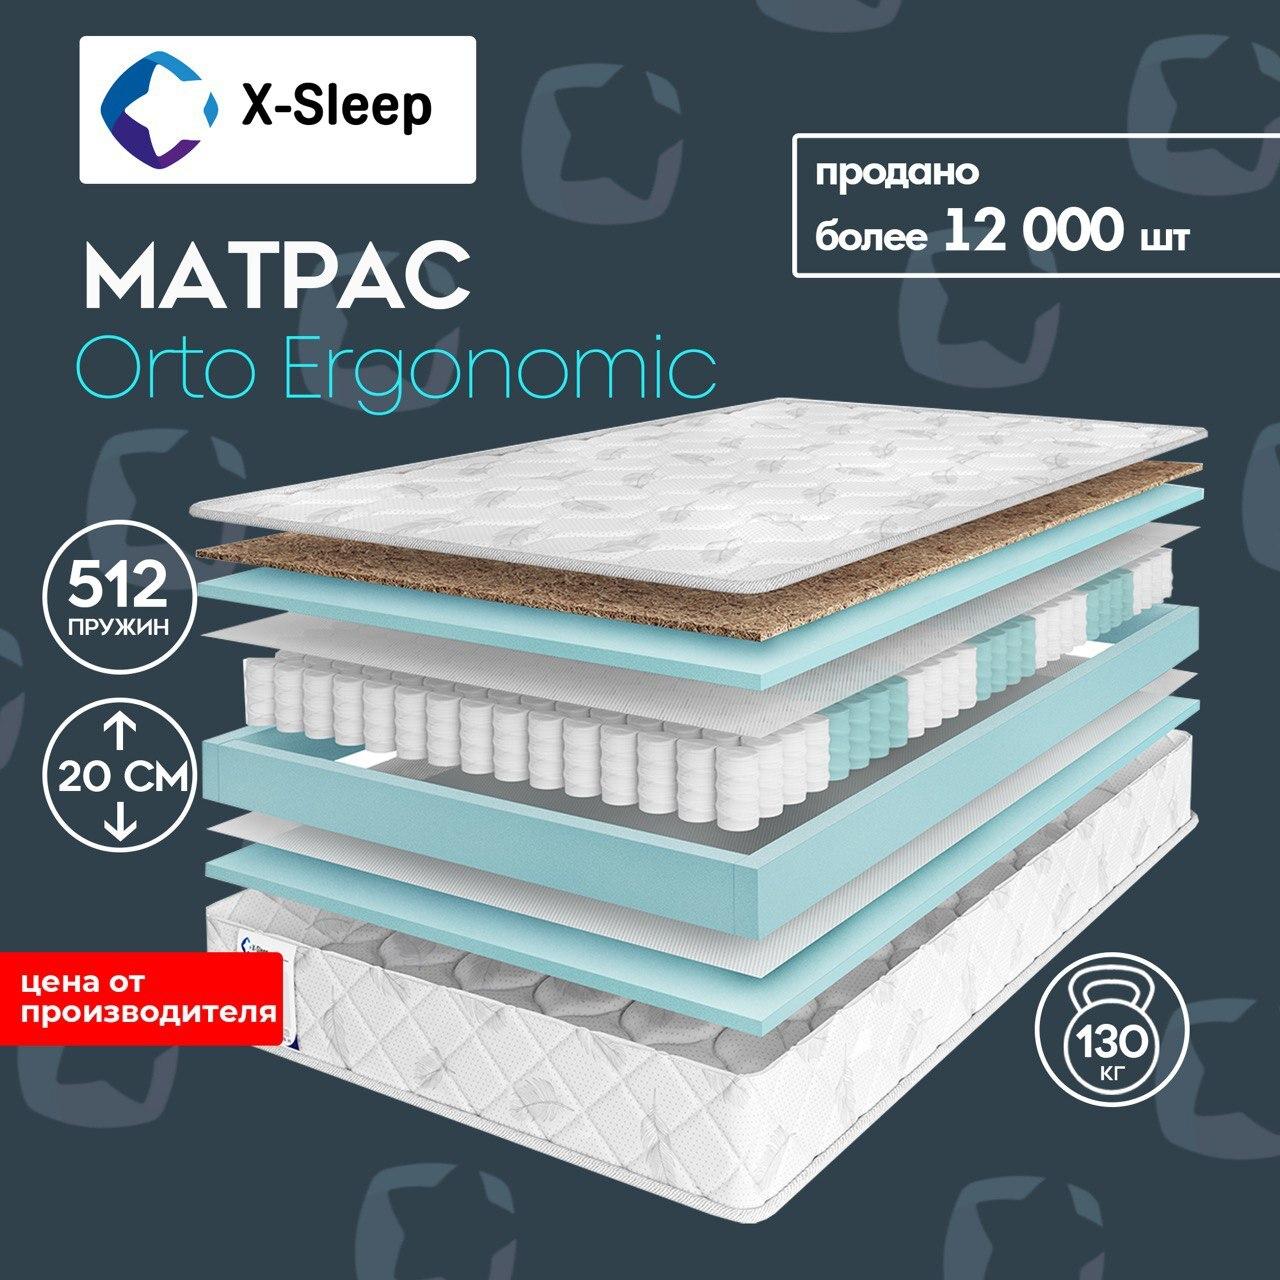 X-Sleep Матрас Orto Ergonomic, Независимые пружины, 160х200 см